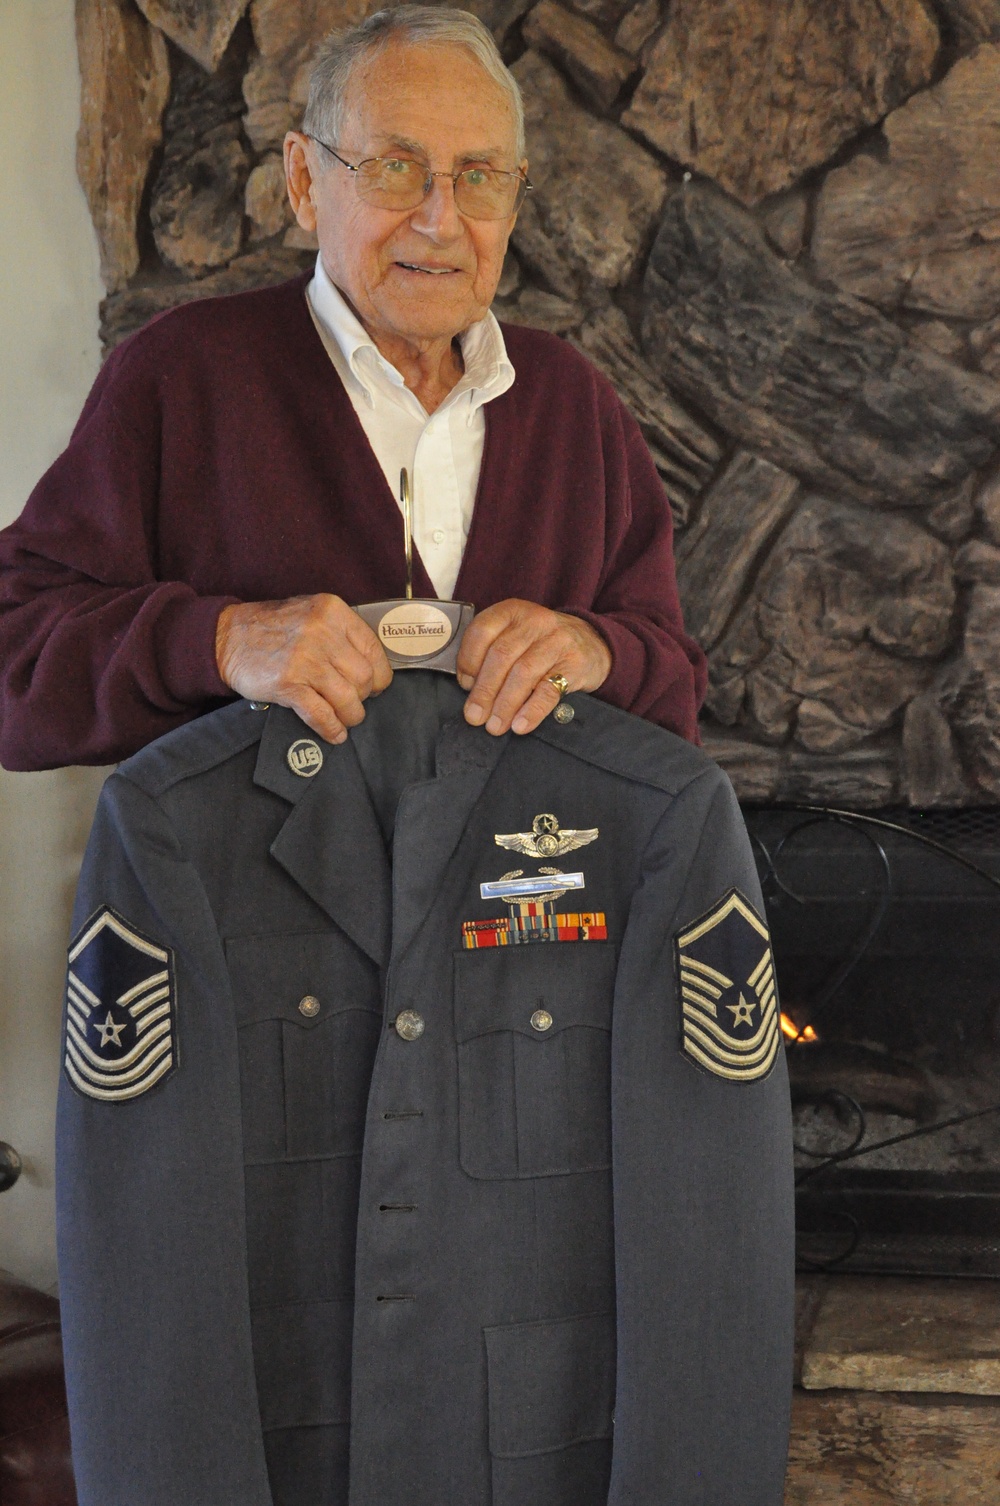 World War II, Air Force vet recalls war